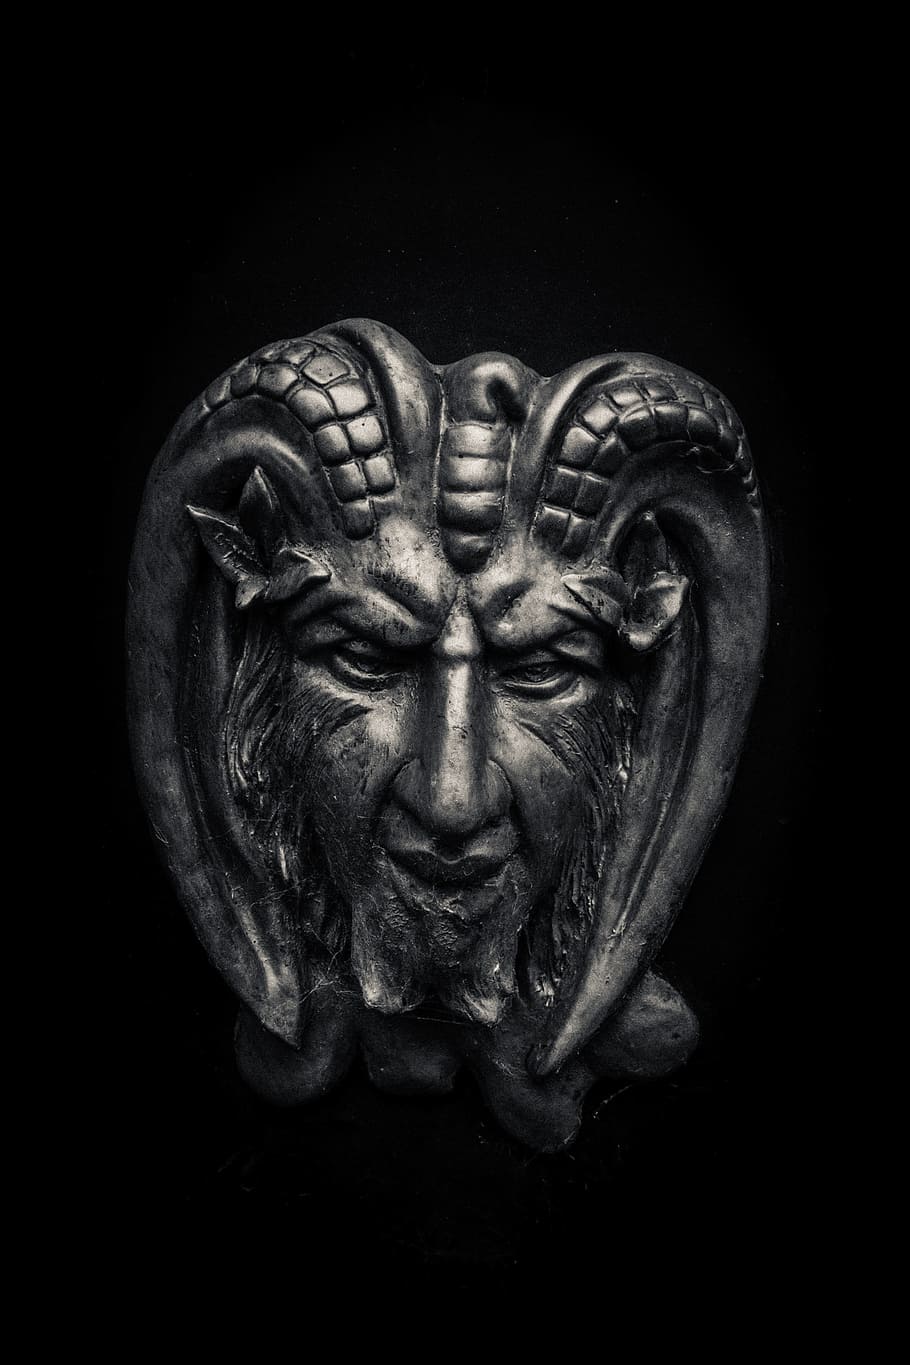 gris, inoxidable, acero, cuernos, decoración de monstruos, diablo, demonio, Satanás, negro, símbolo